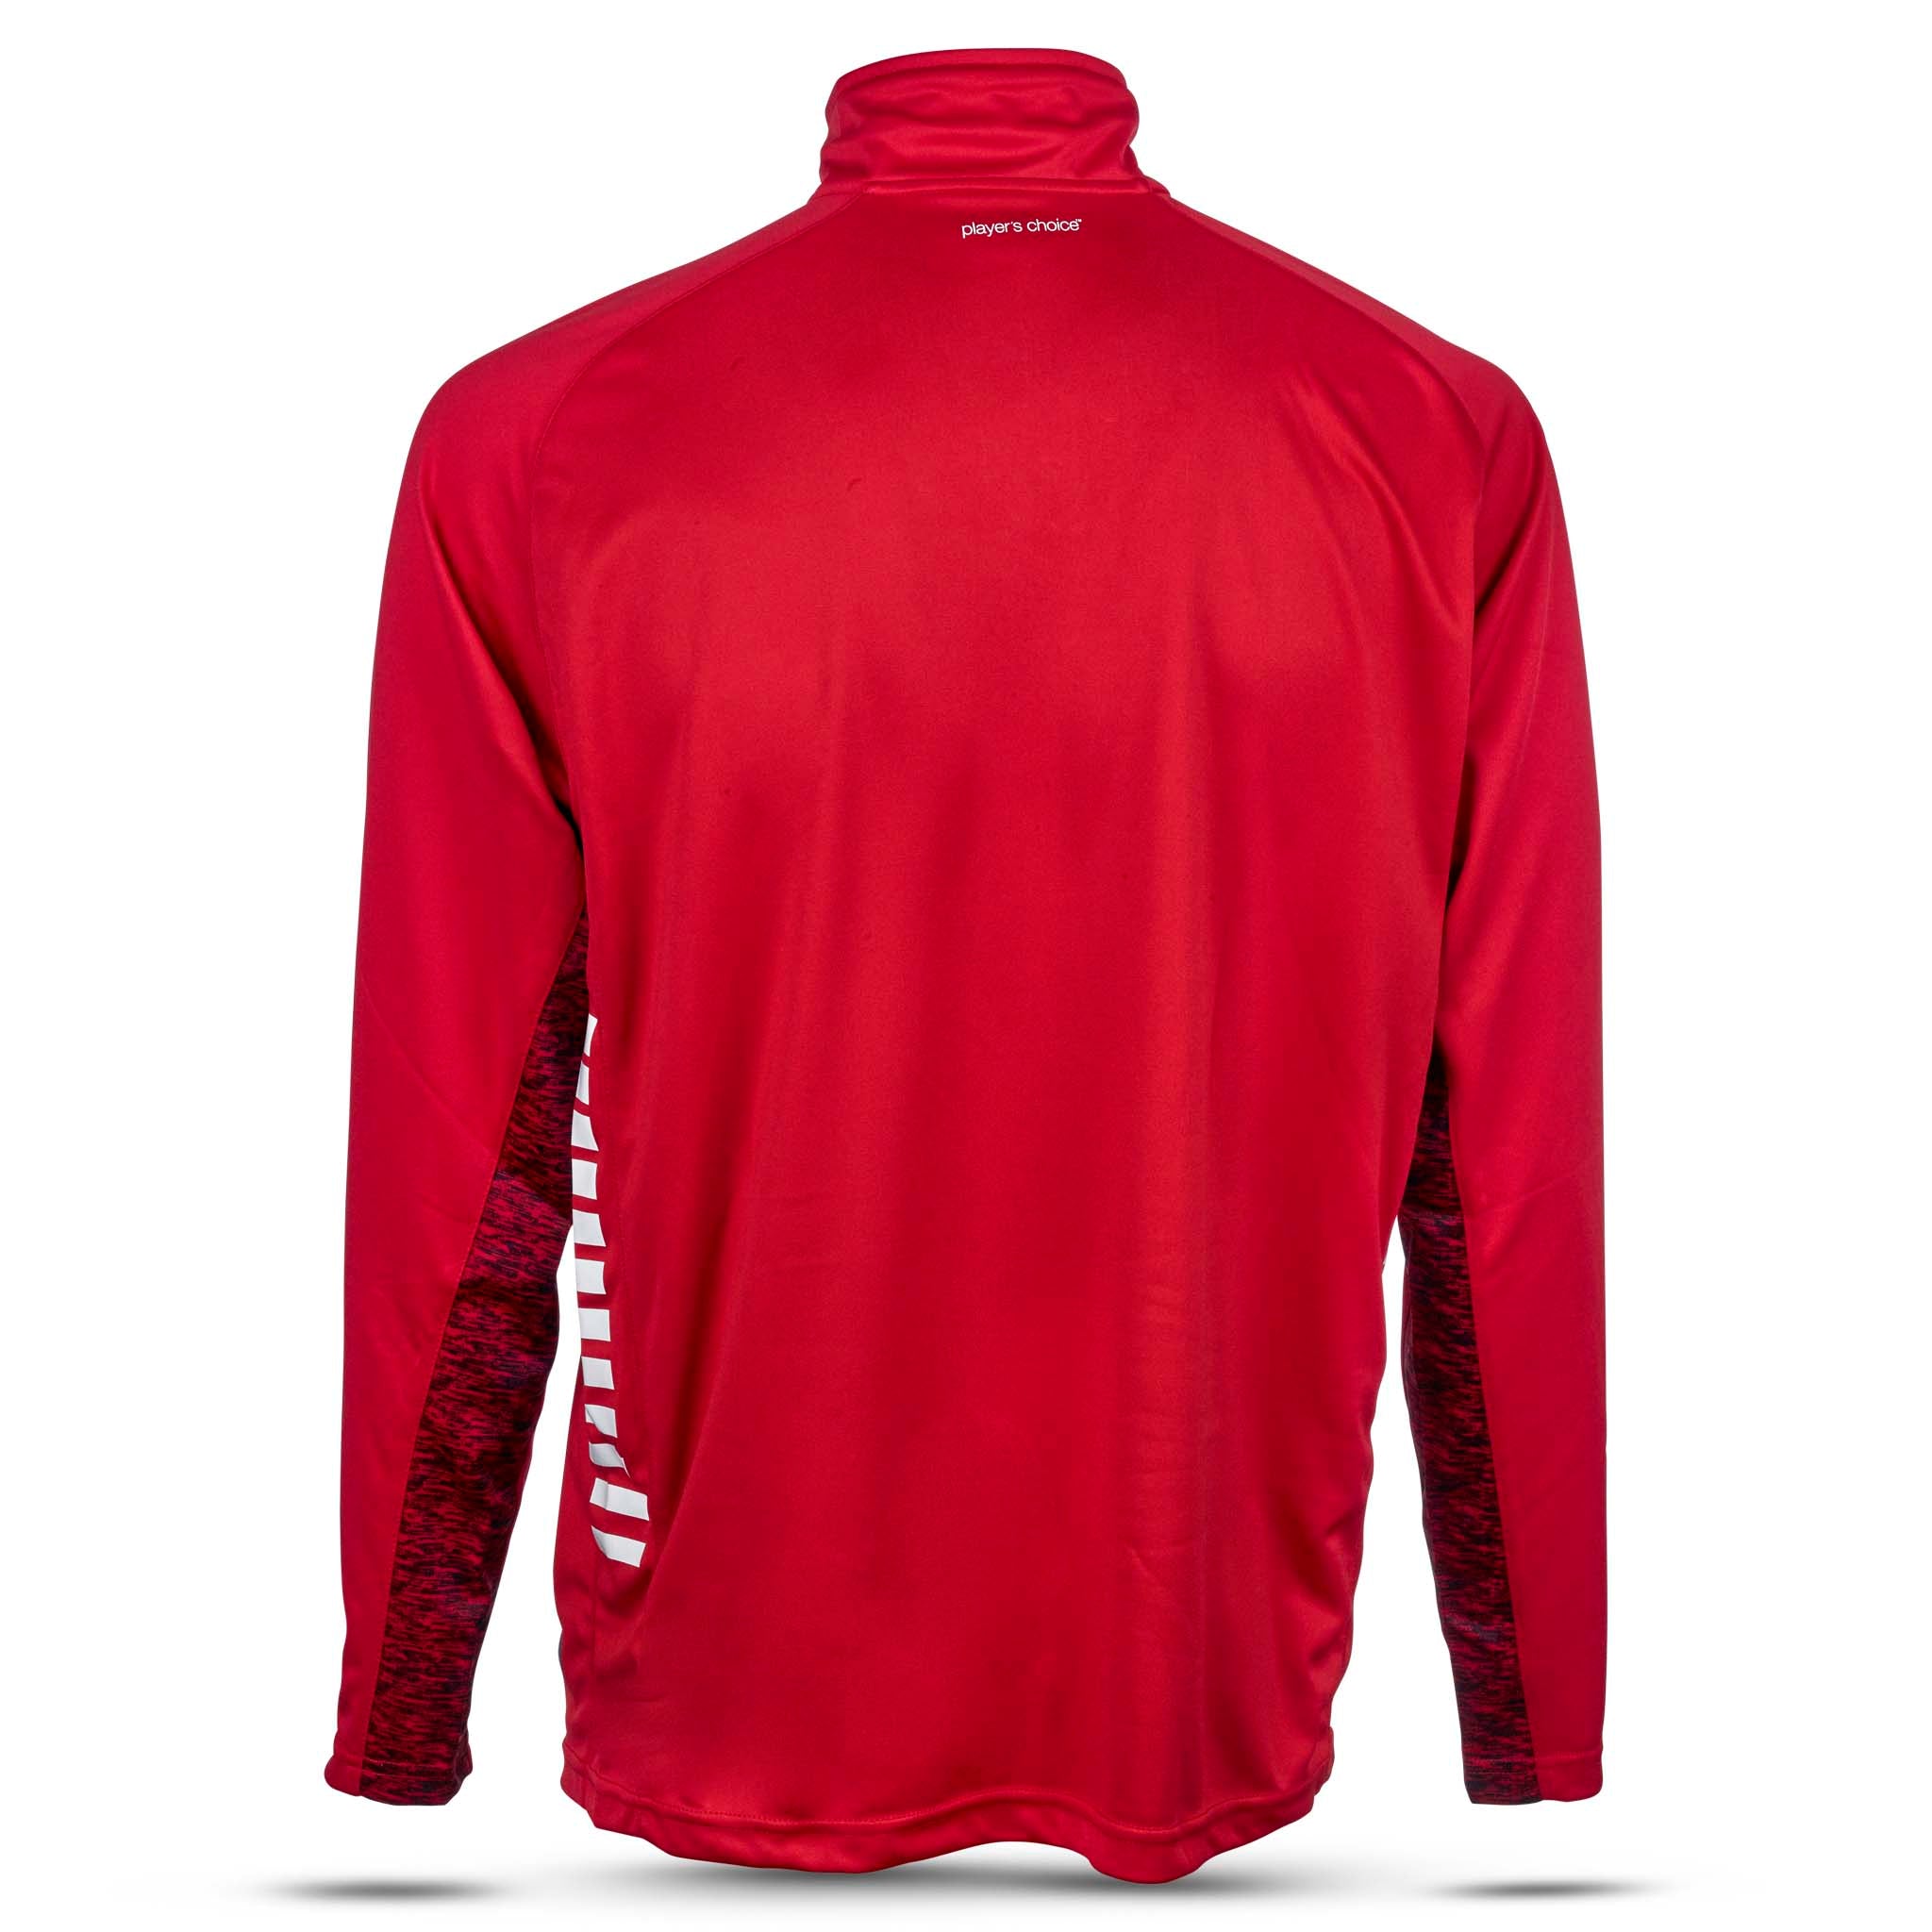 Spain Træningssweatshirt 1/2 lynlås - Børn #farve_rød